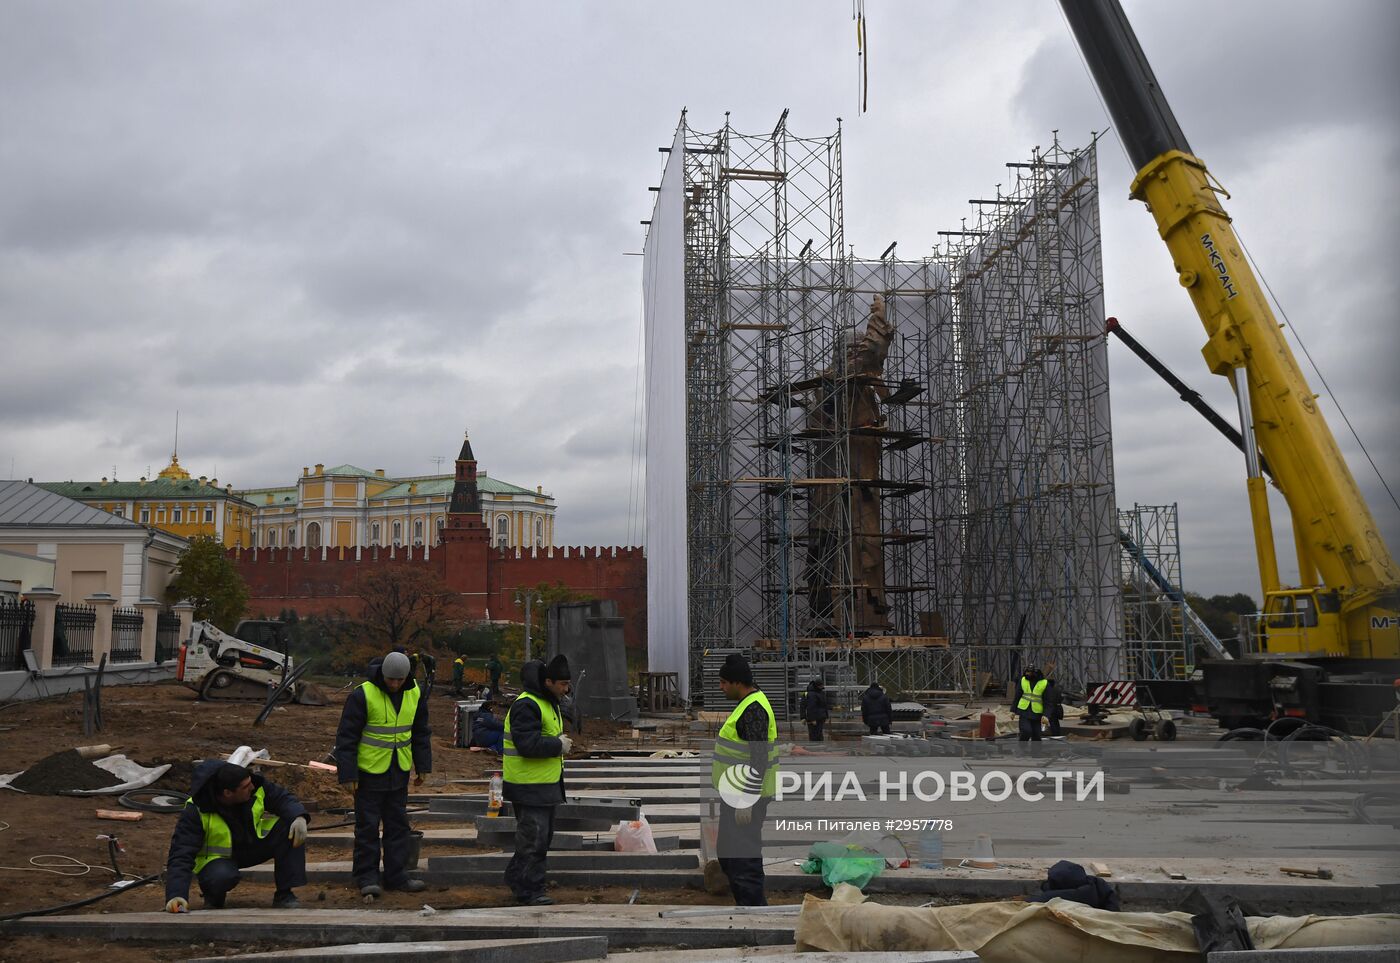 Продолжается монтаж князю Владимиру на Боровицкой площади в Москве